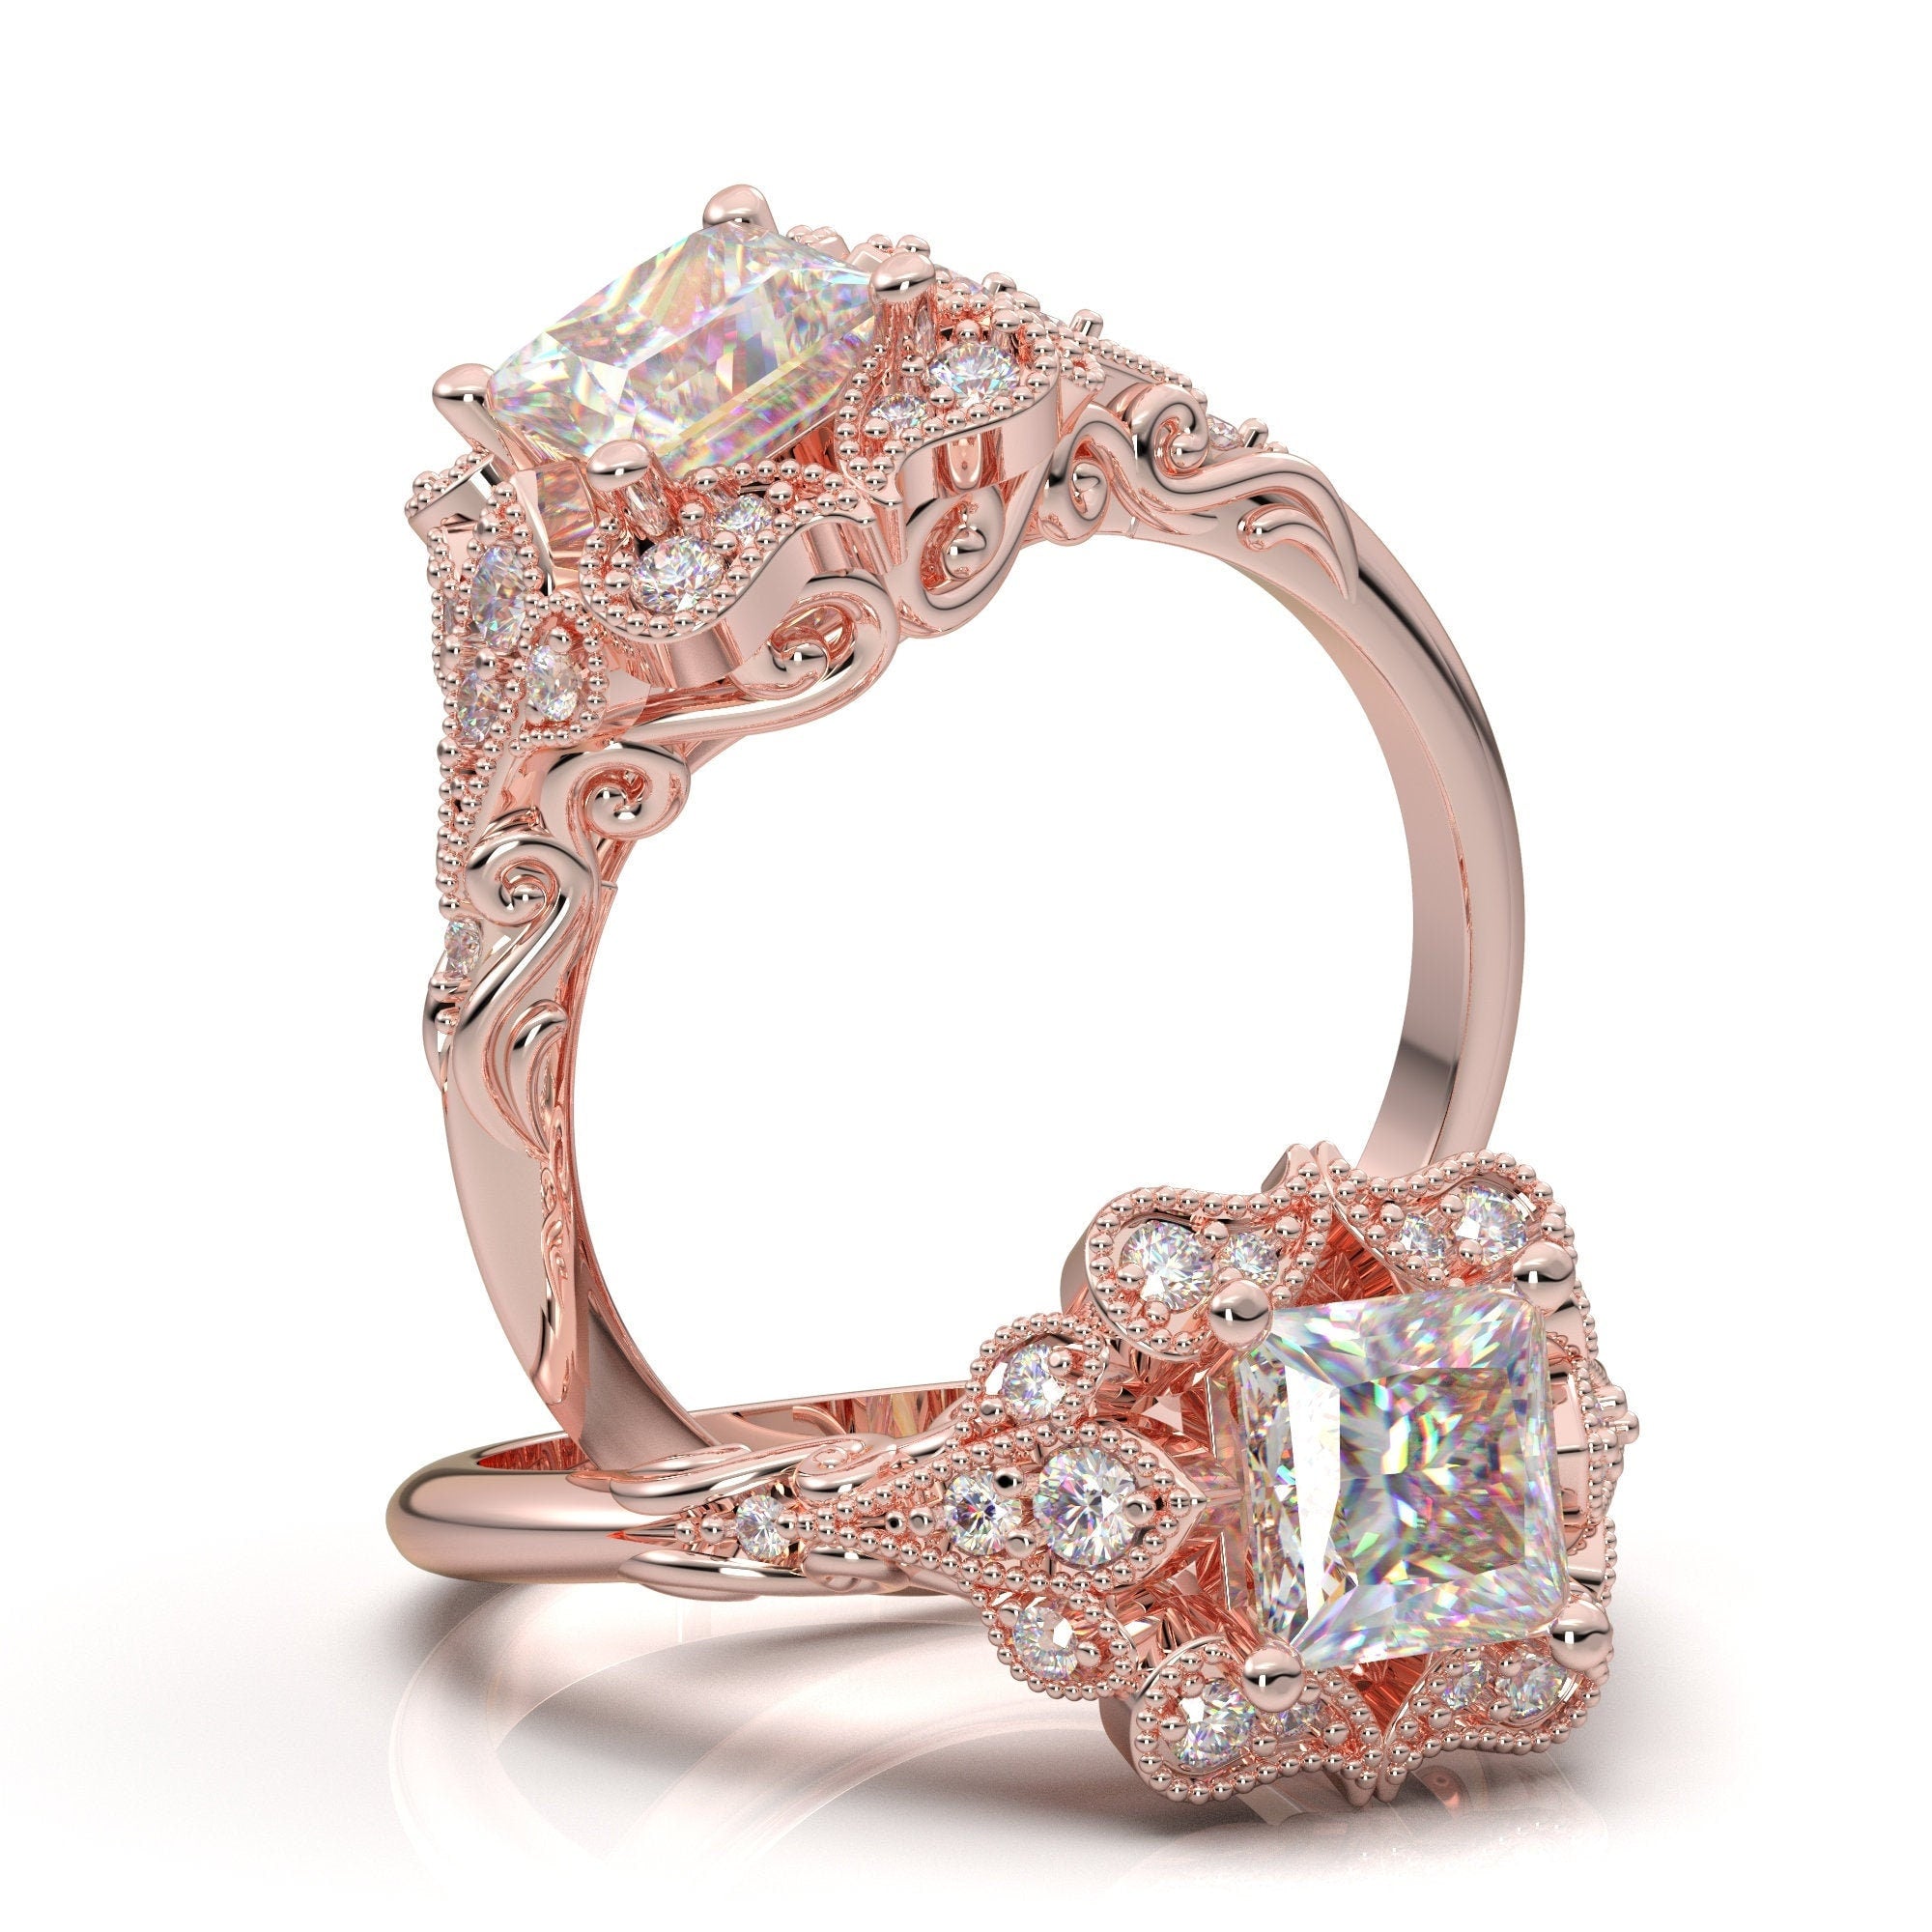 Rose Gold Vintage Engagement Ring